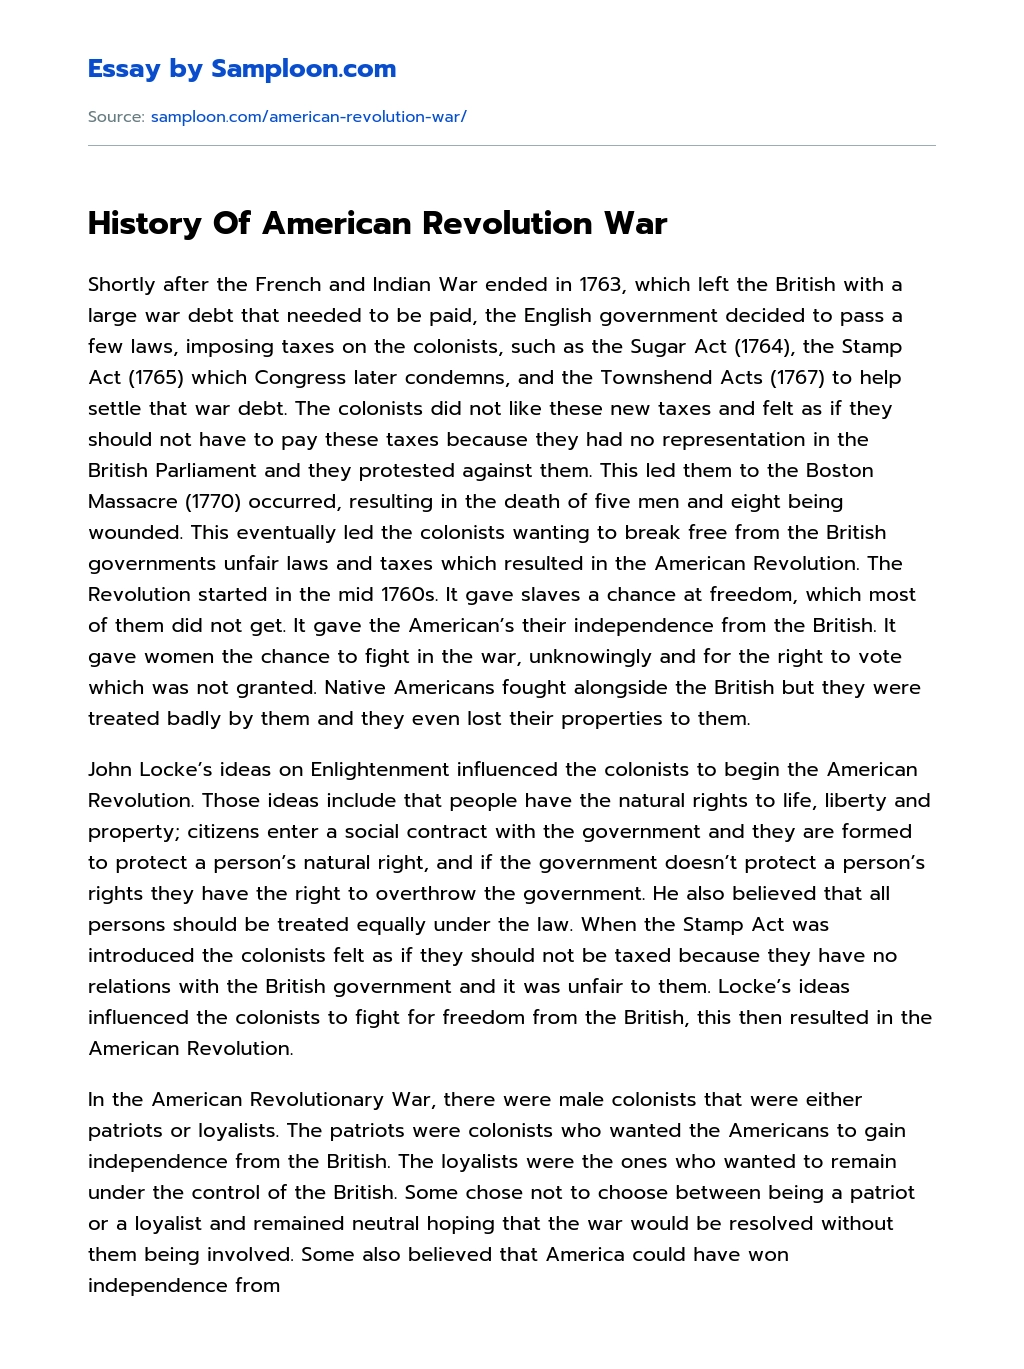 History Of American Revolution War essay